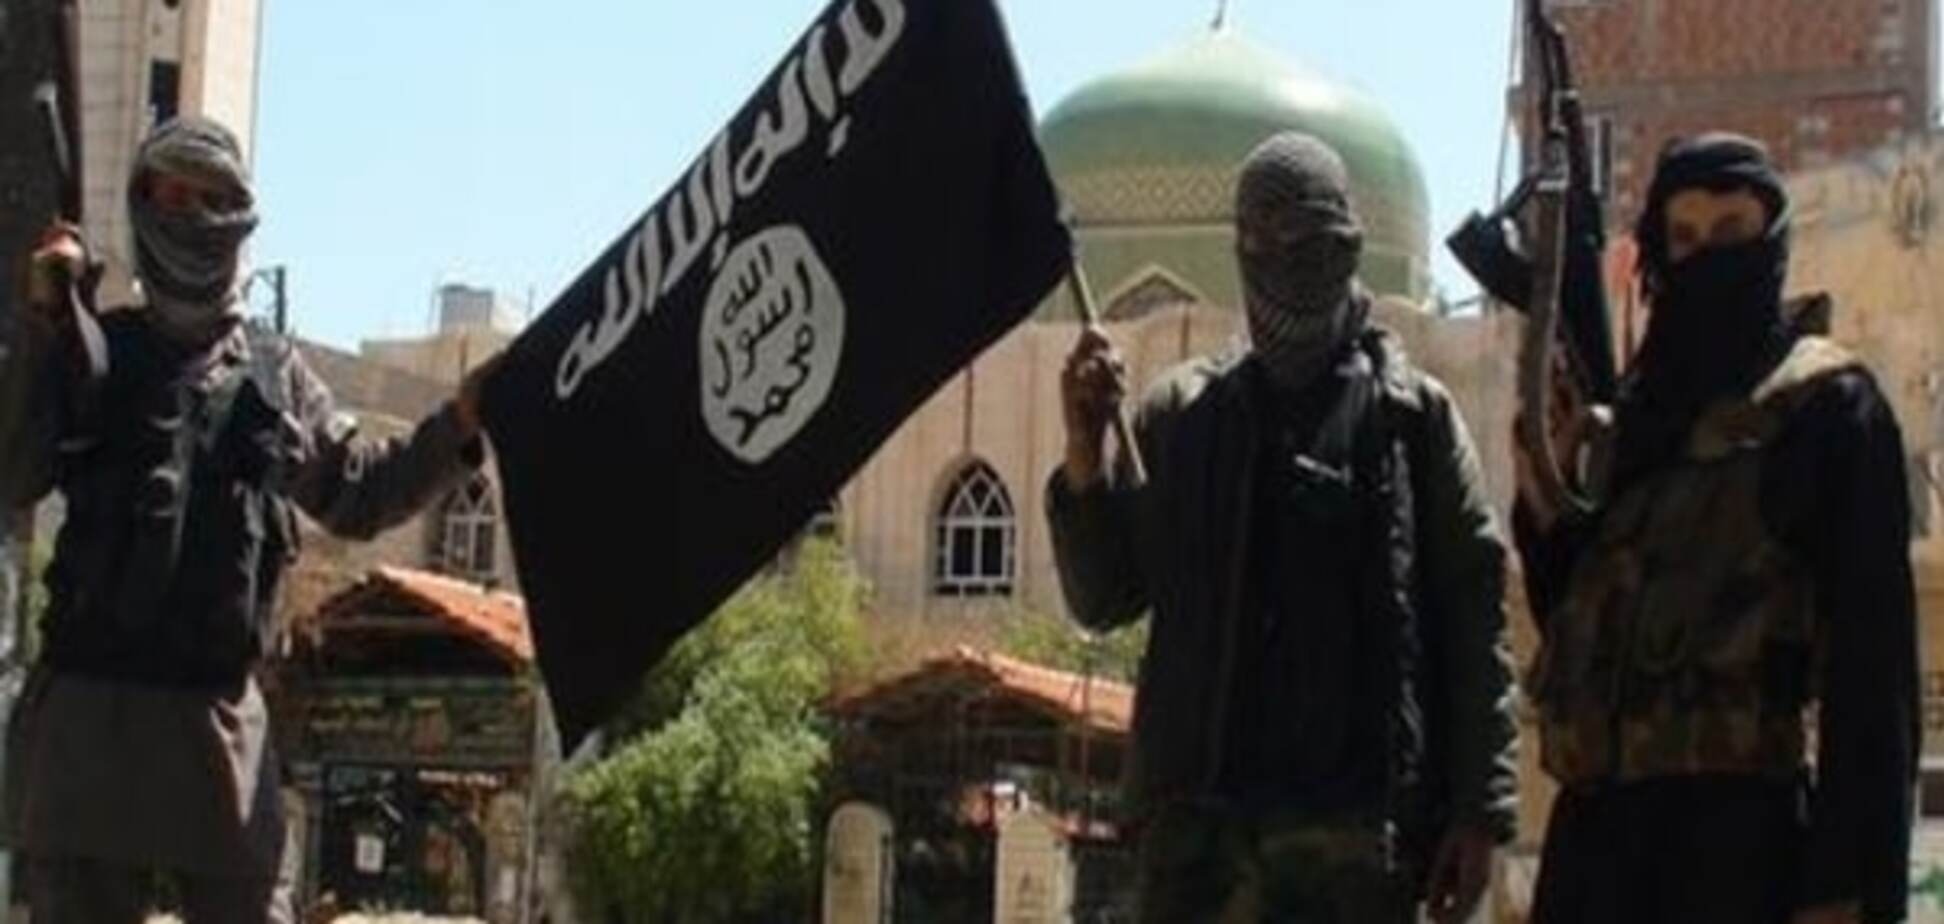 Комментарий: Объявление джихада  - подарок ИГИЛ российской пропаганде